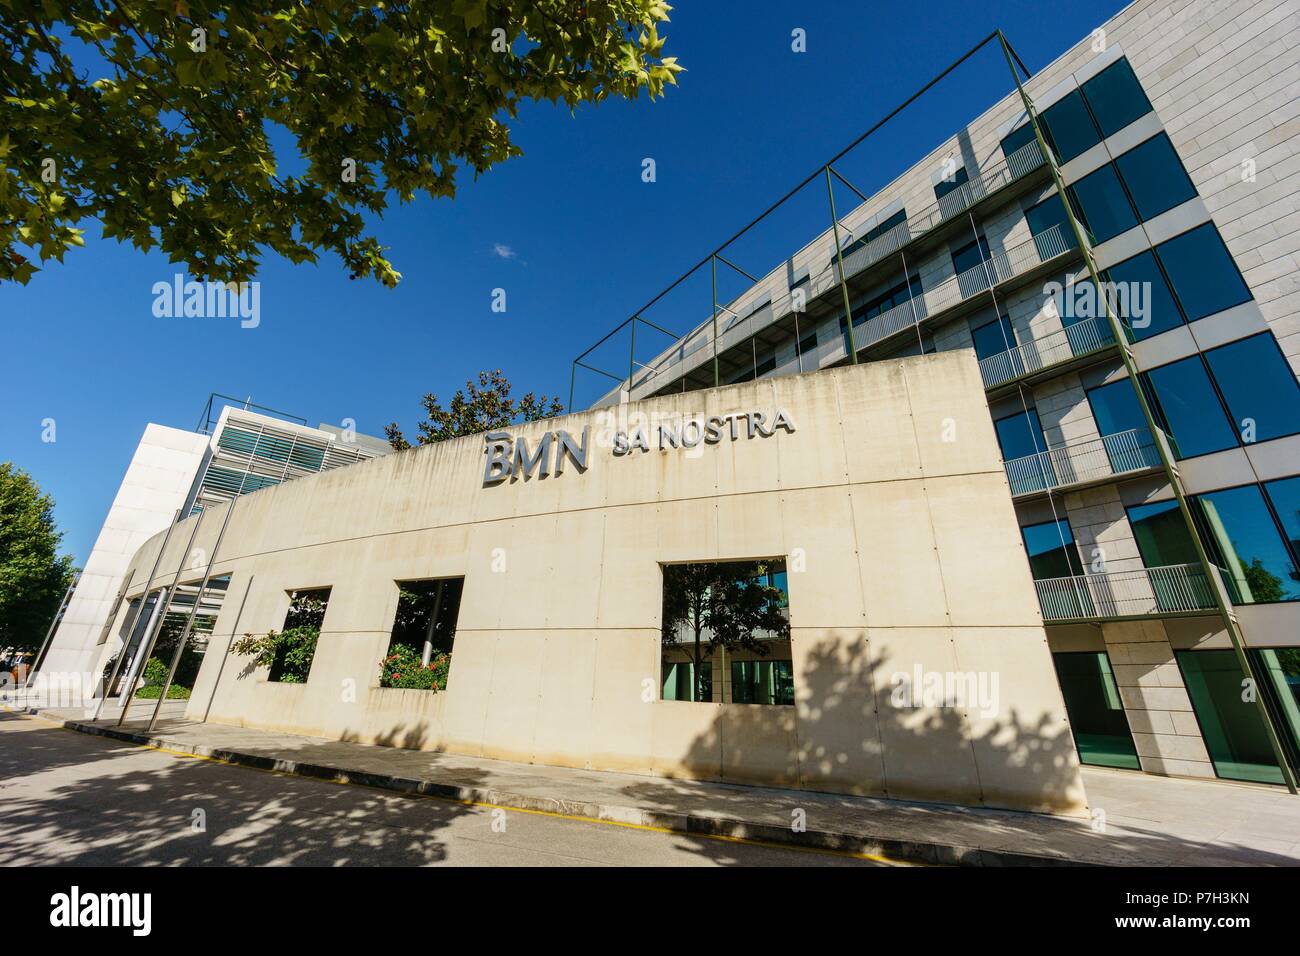 oficinas centrales del banco BMN Sa Nostra, poligono de Son Fuster, Palma,Mallorca, balearic islands, spain, europe. Stock Photo